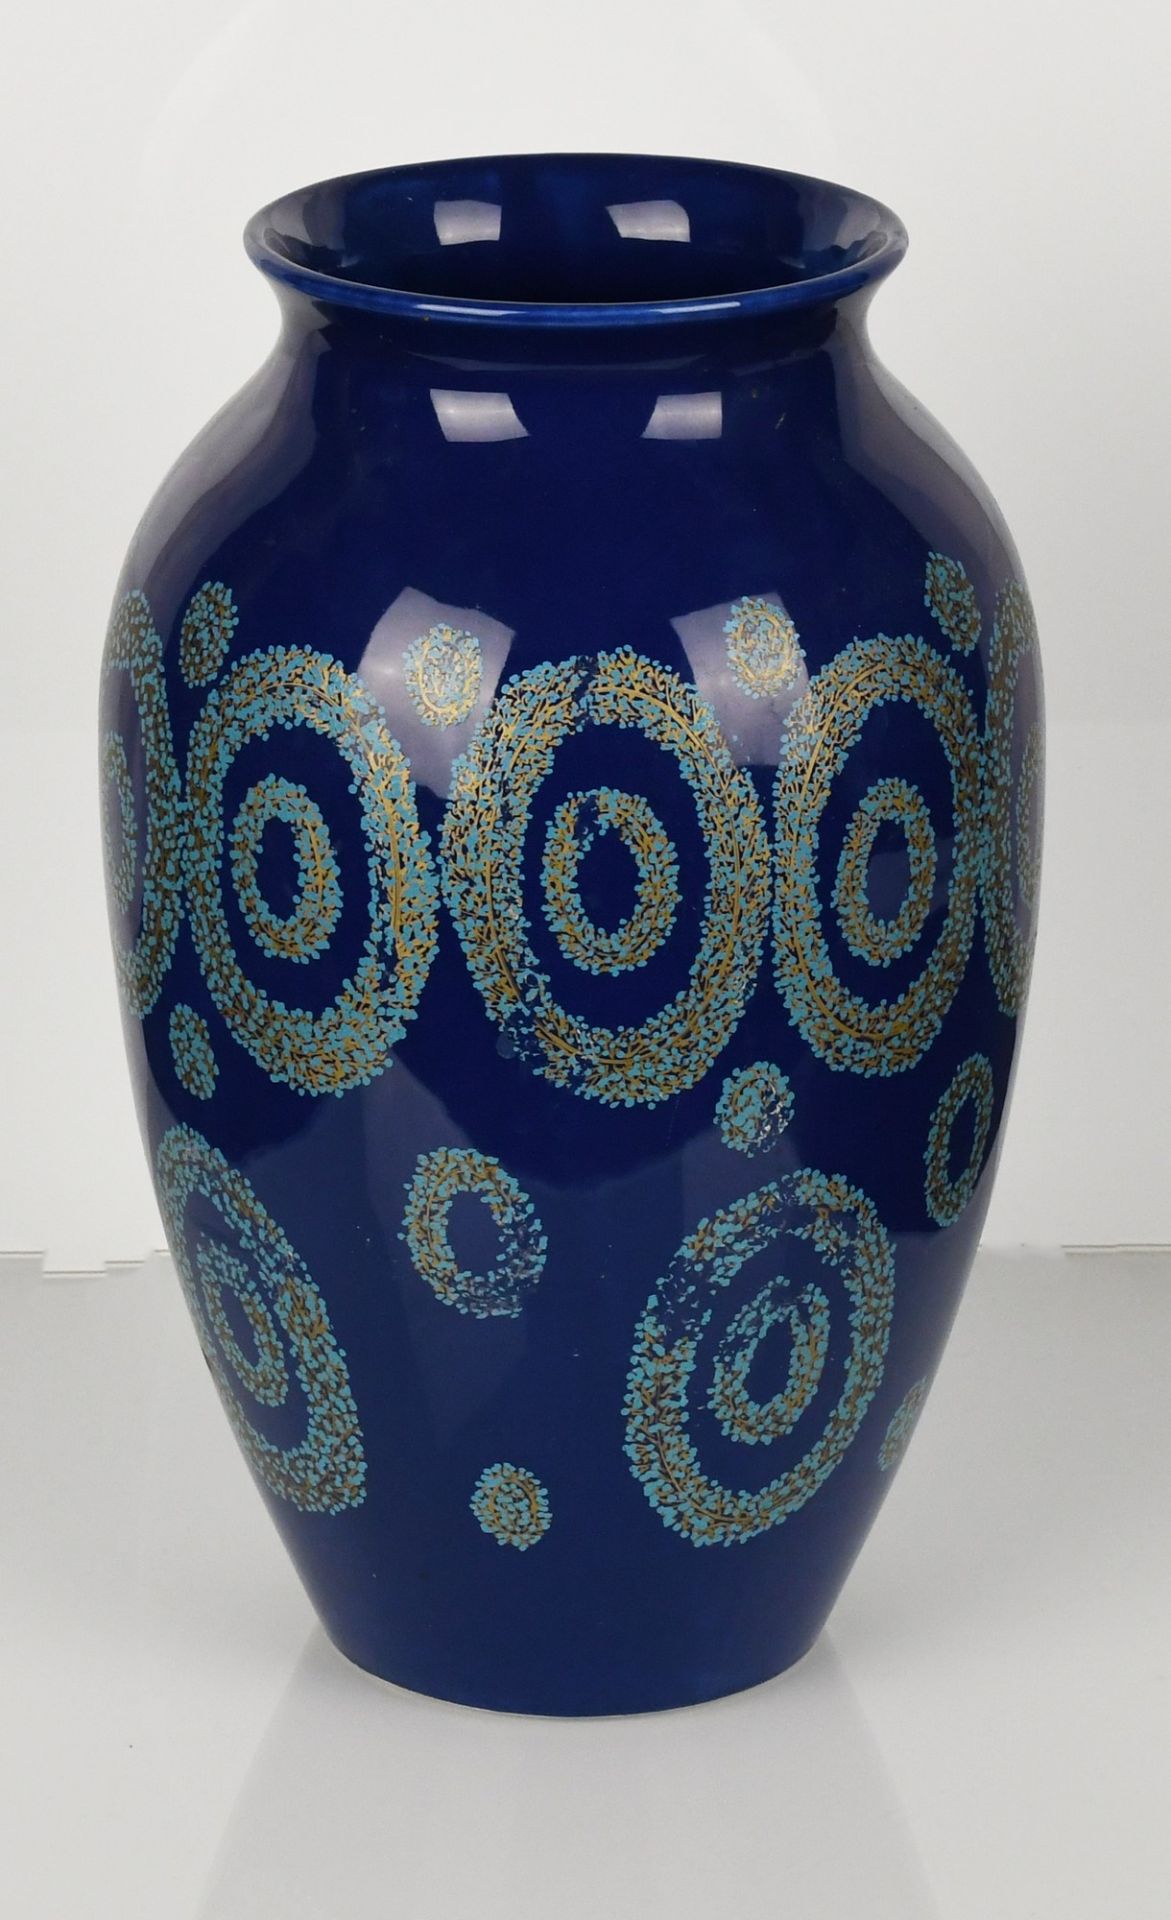 Vaso in ceramica blu con particolari decori celesti e lumeggiature in oro - Image 3 of 3